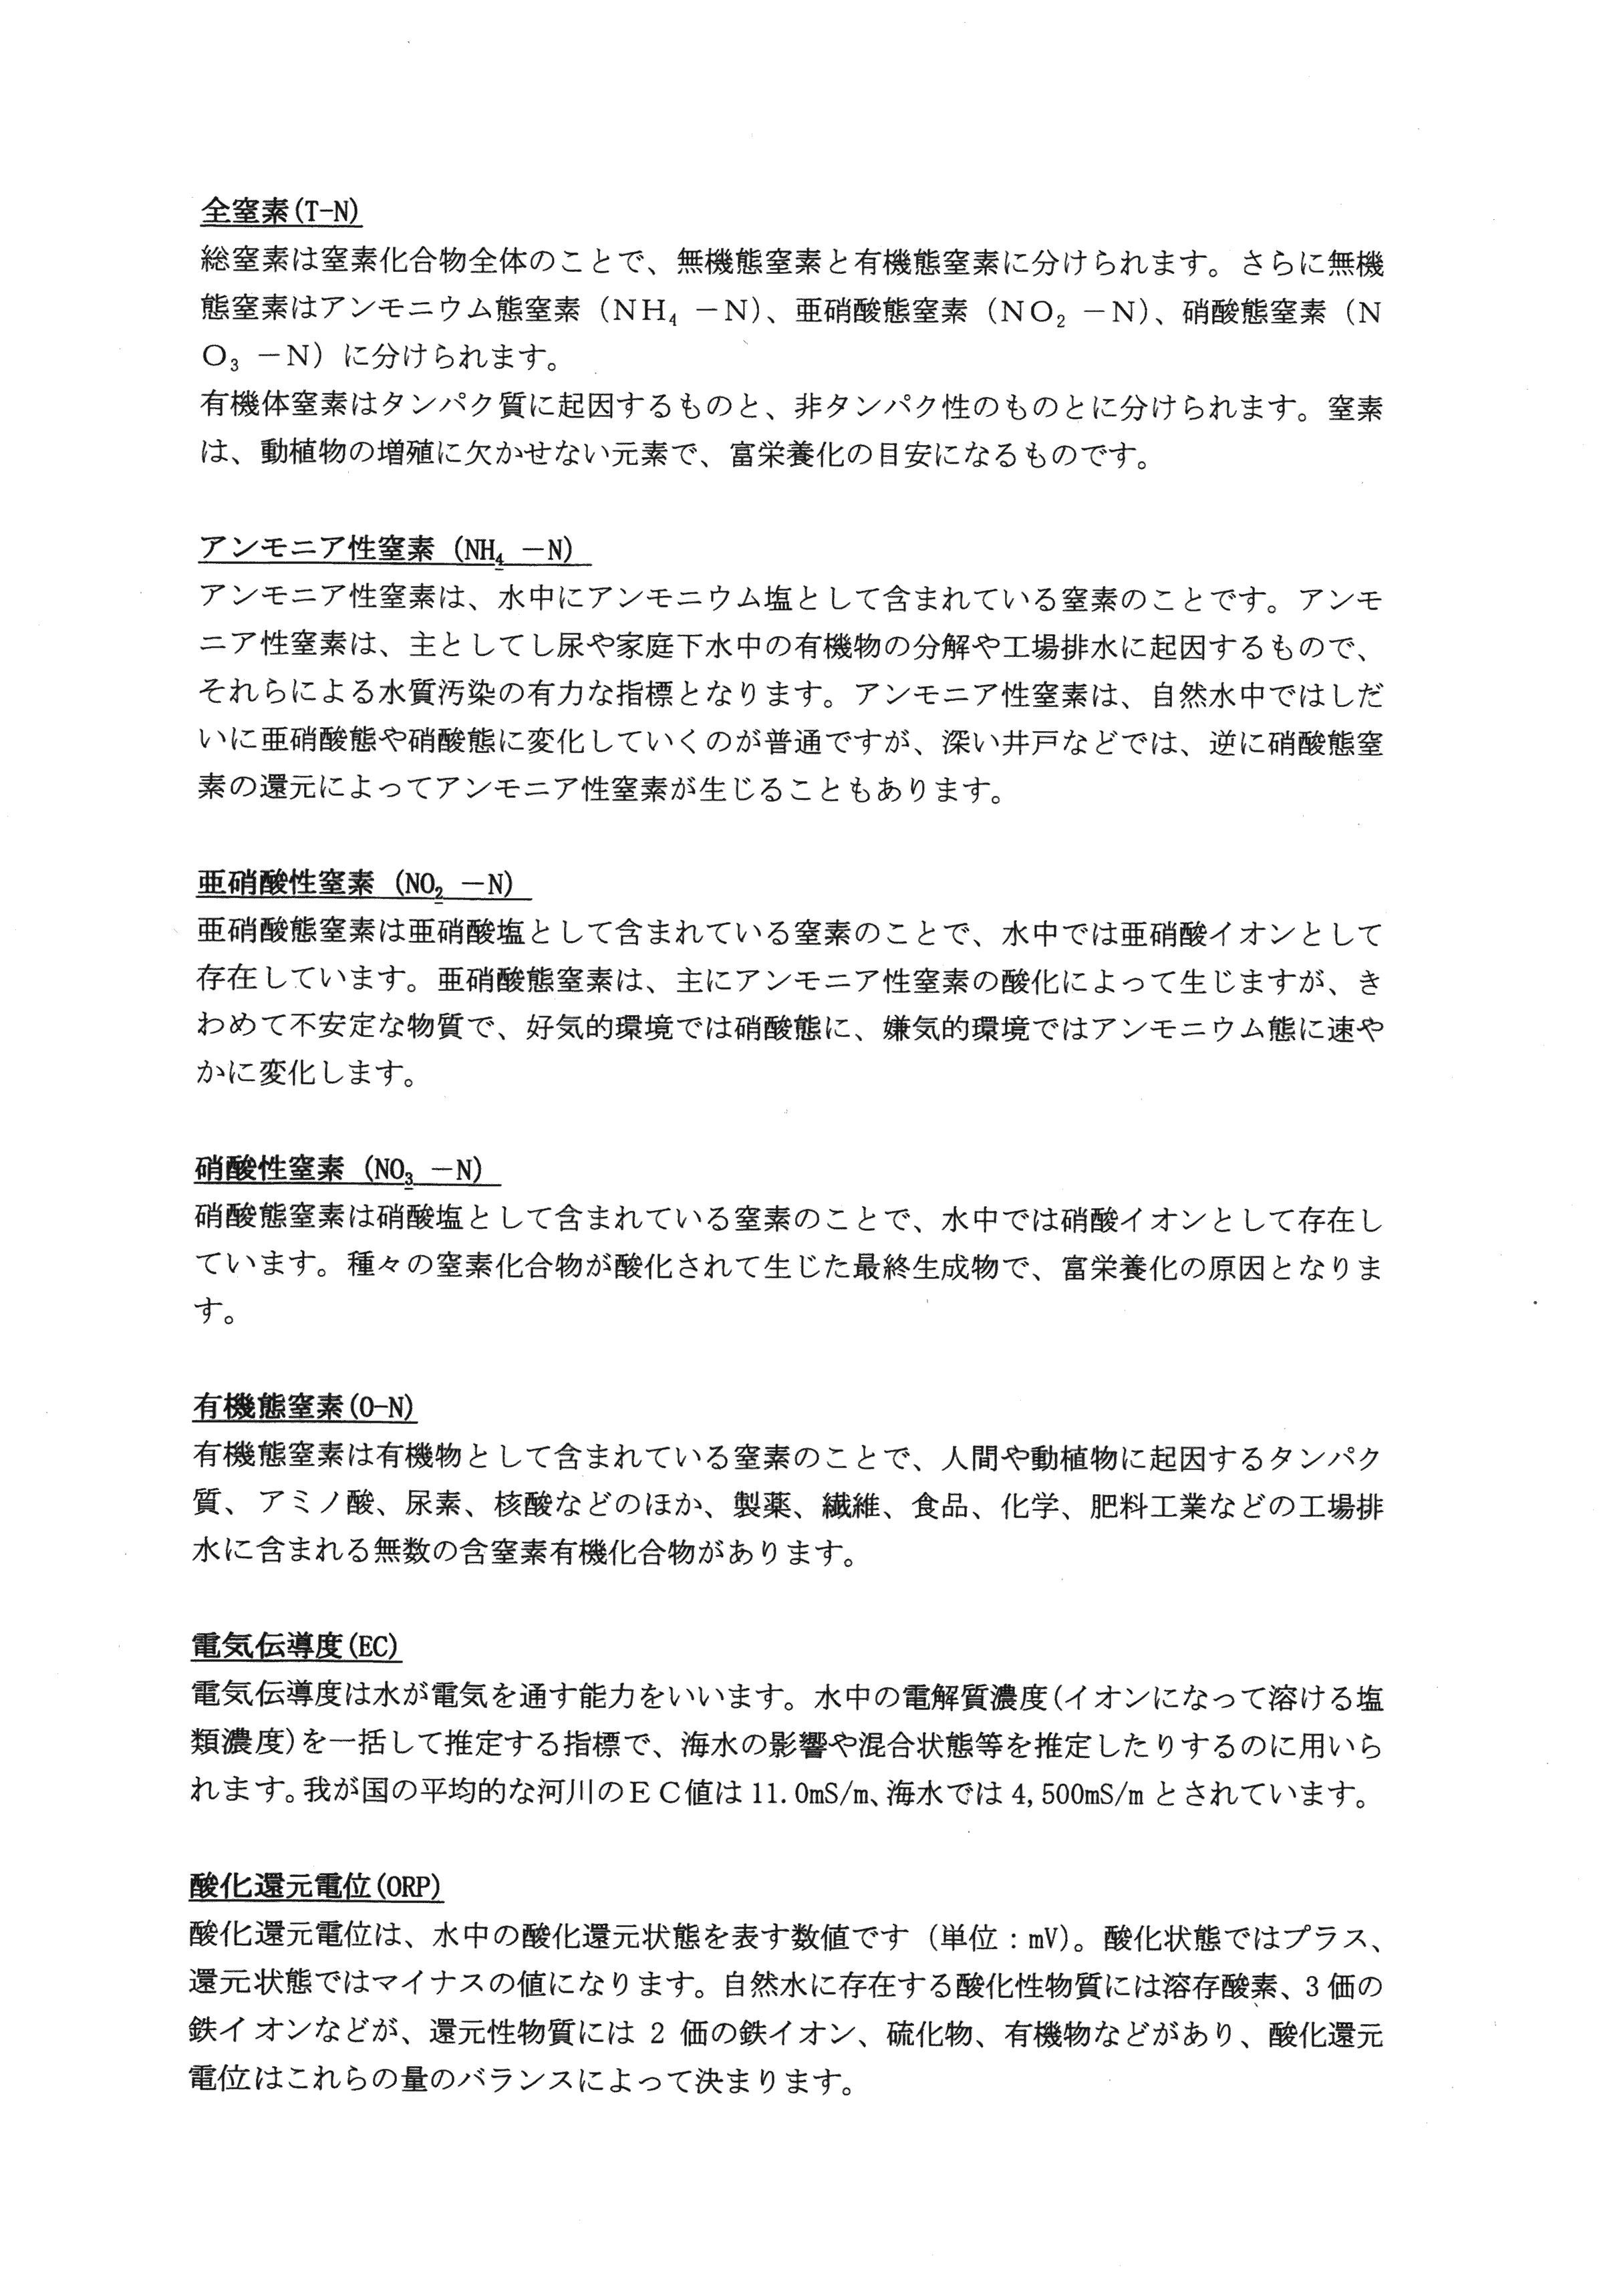 平成29年11月-赤田川水質汚濁状況調査報告書-34